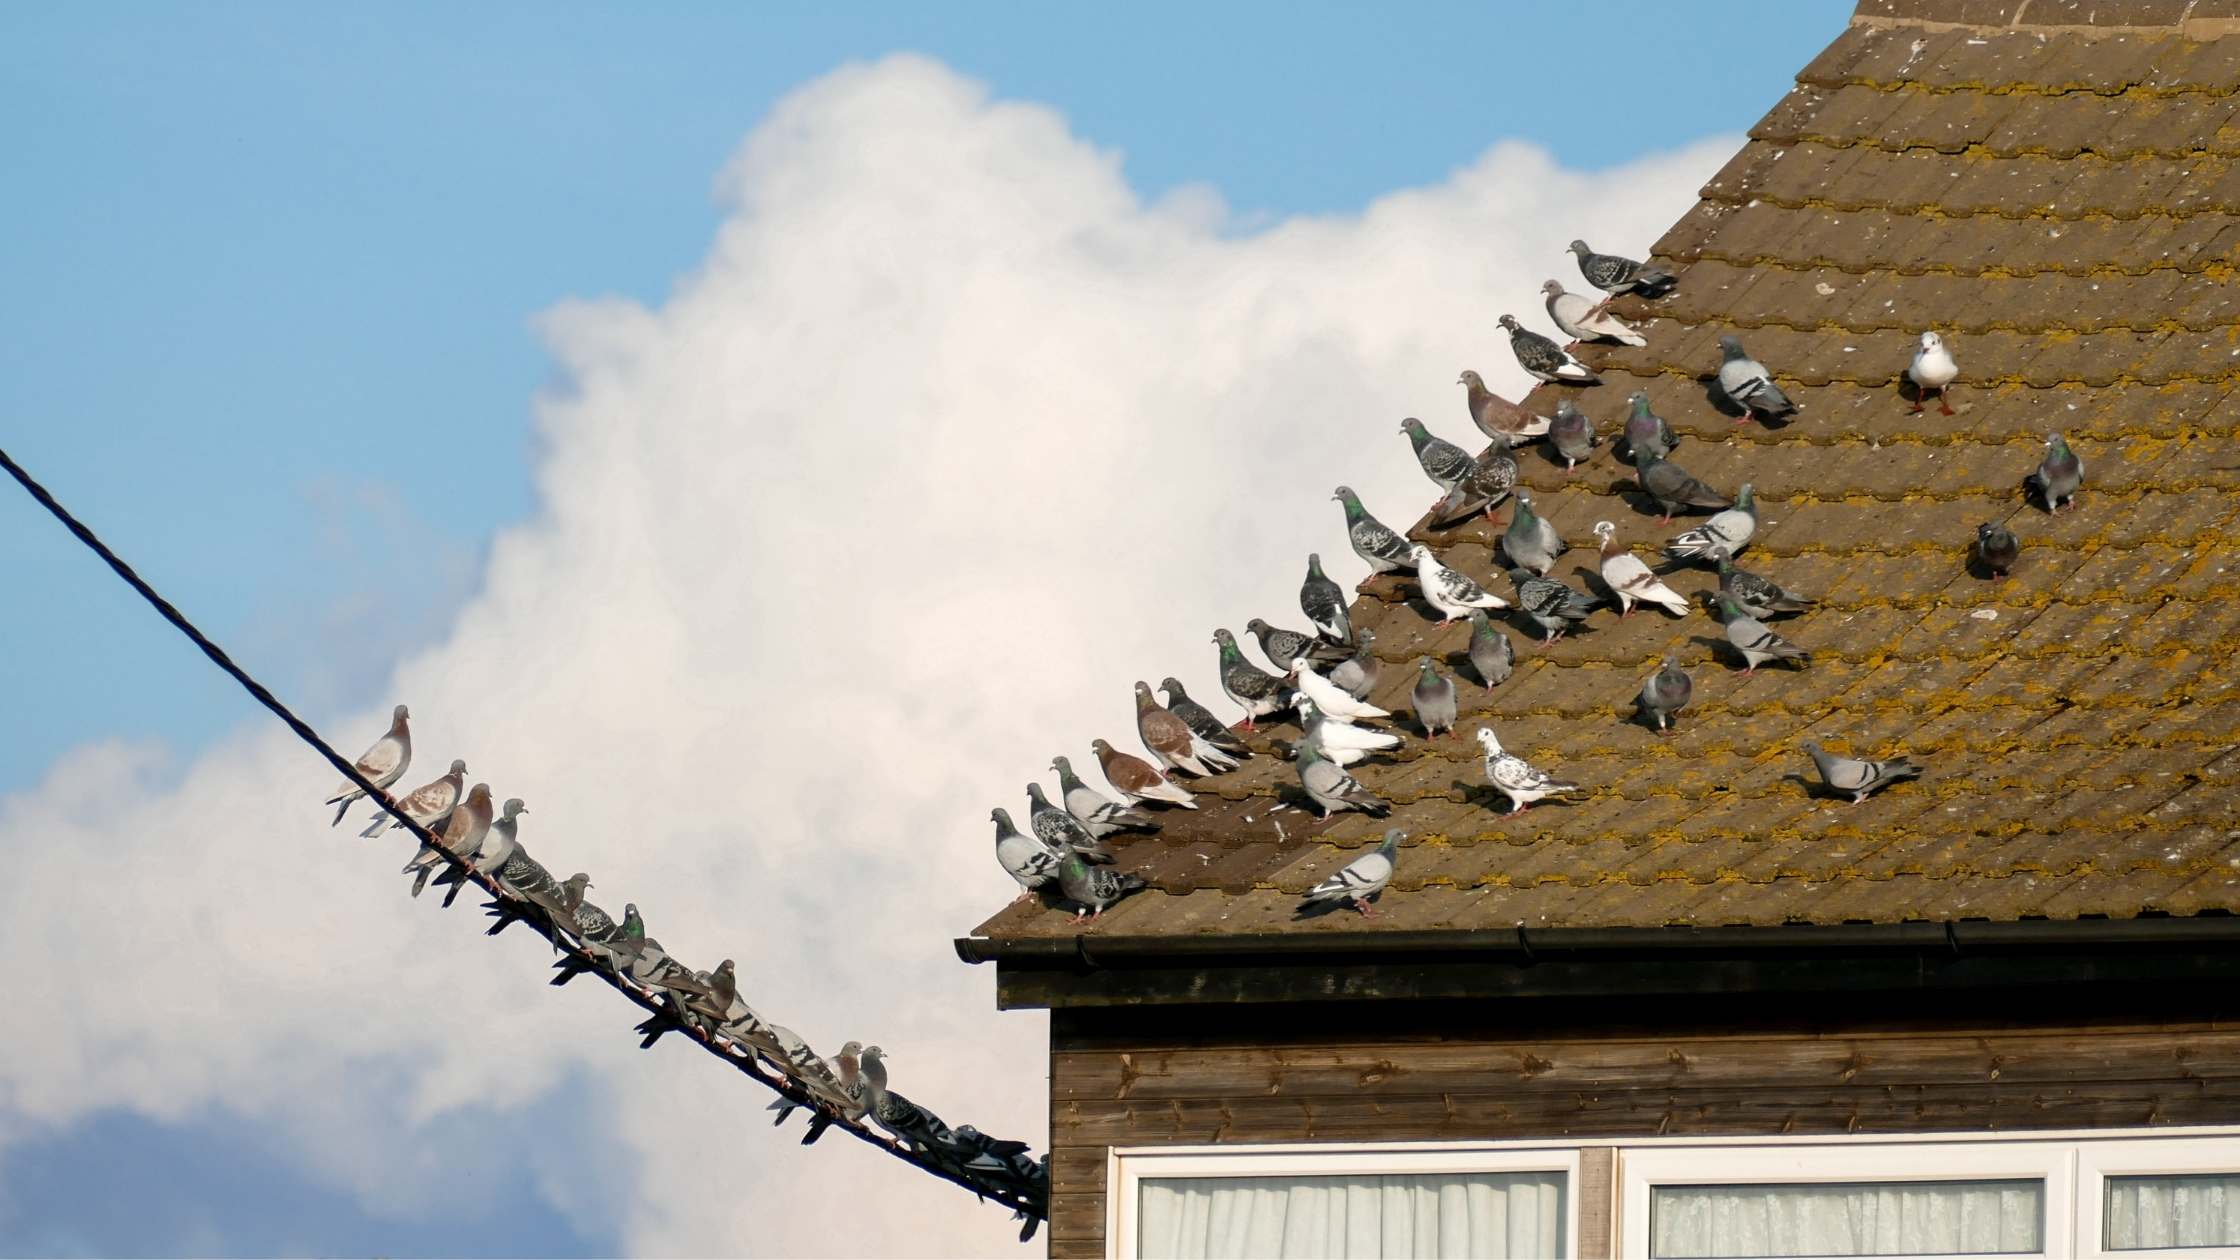 Tauben auf einem Dach. Sie schauen alle in eine Richtung, zu anderen Tauben, die auf einem Stromkabel sitzen.